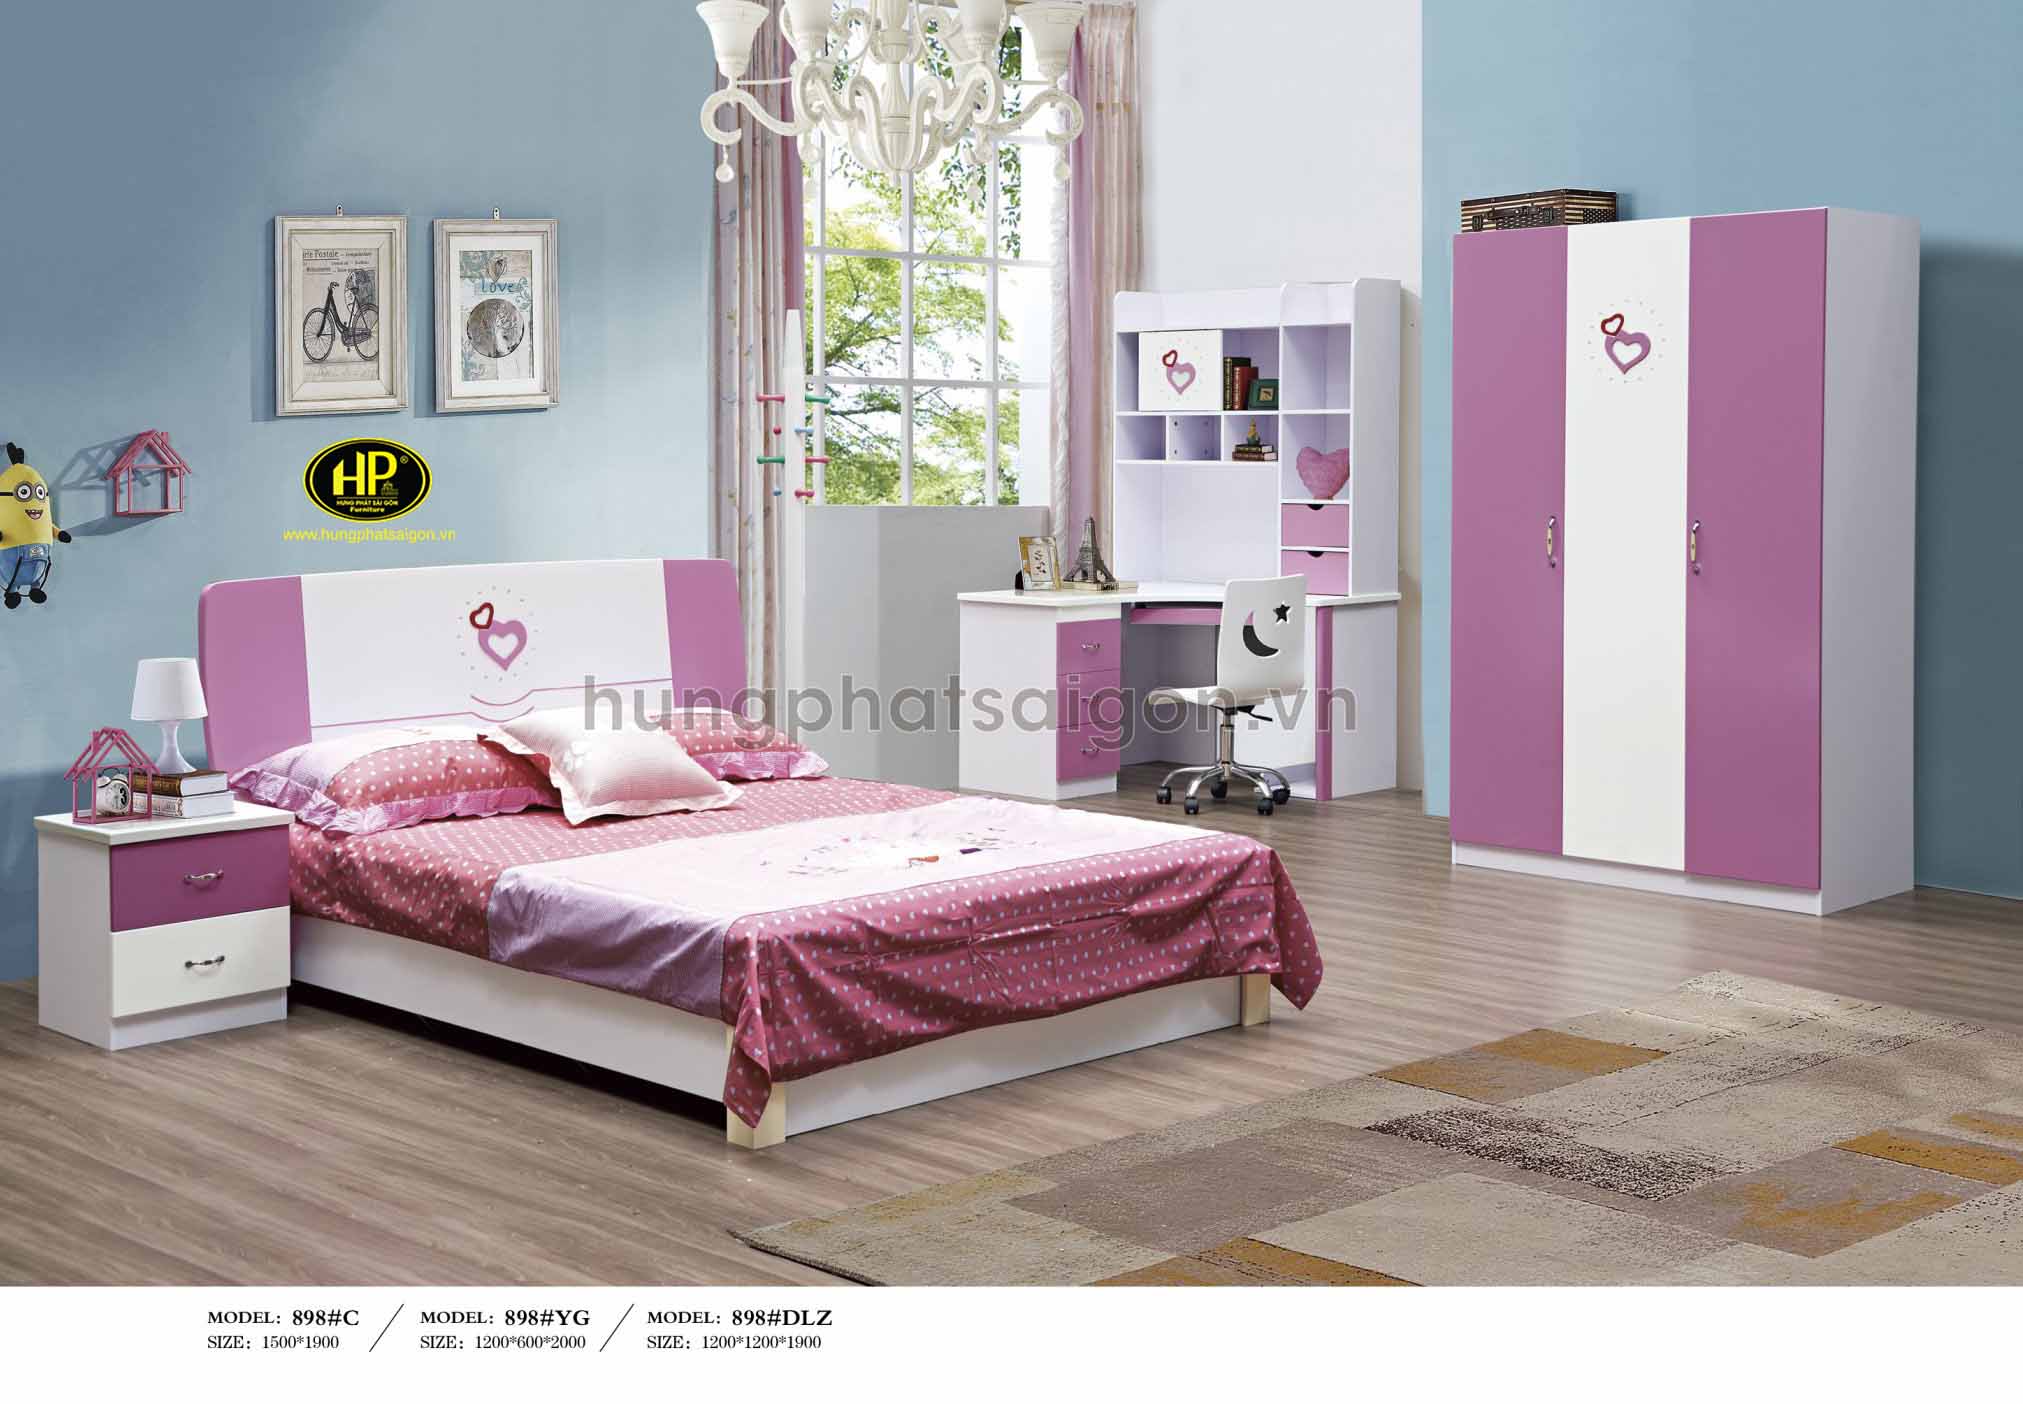 Trọn bộ giường tủ bàn phấn màu hồng TP-898